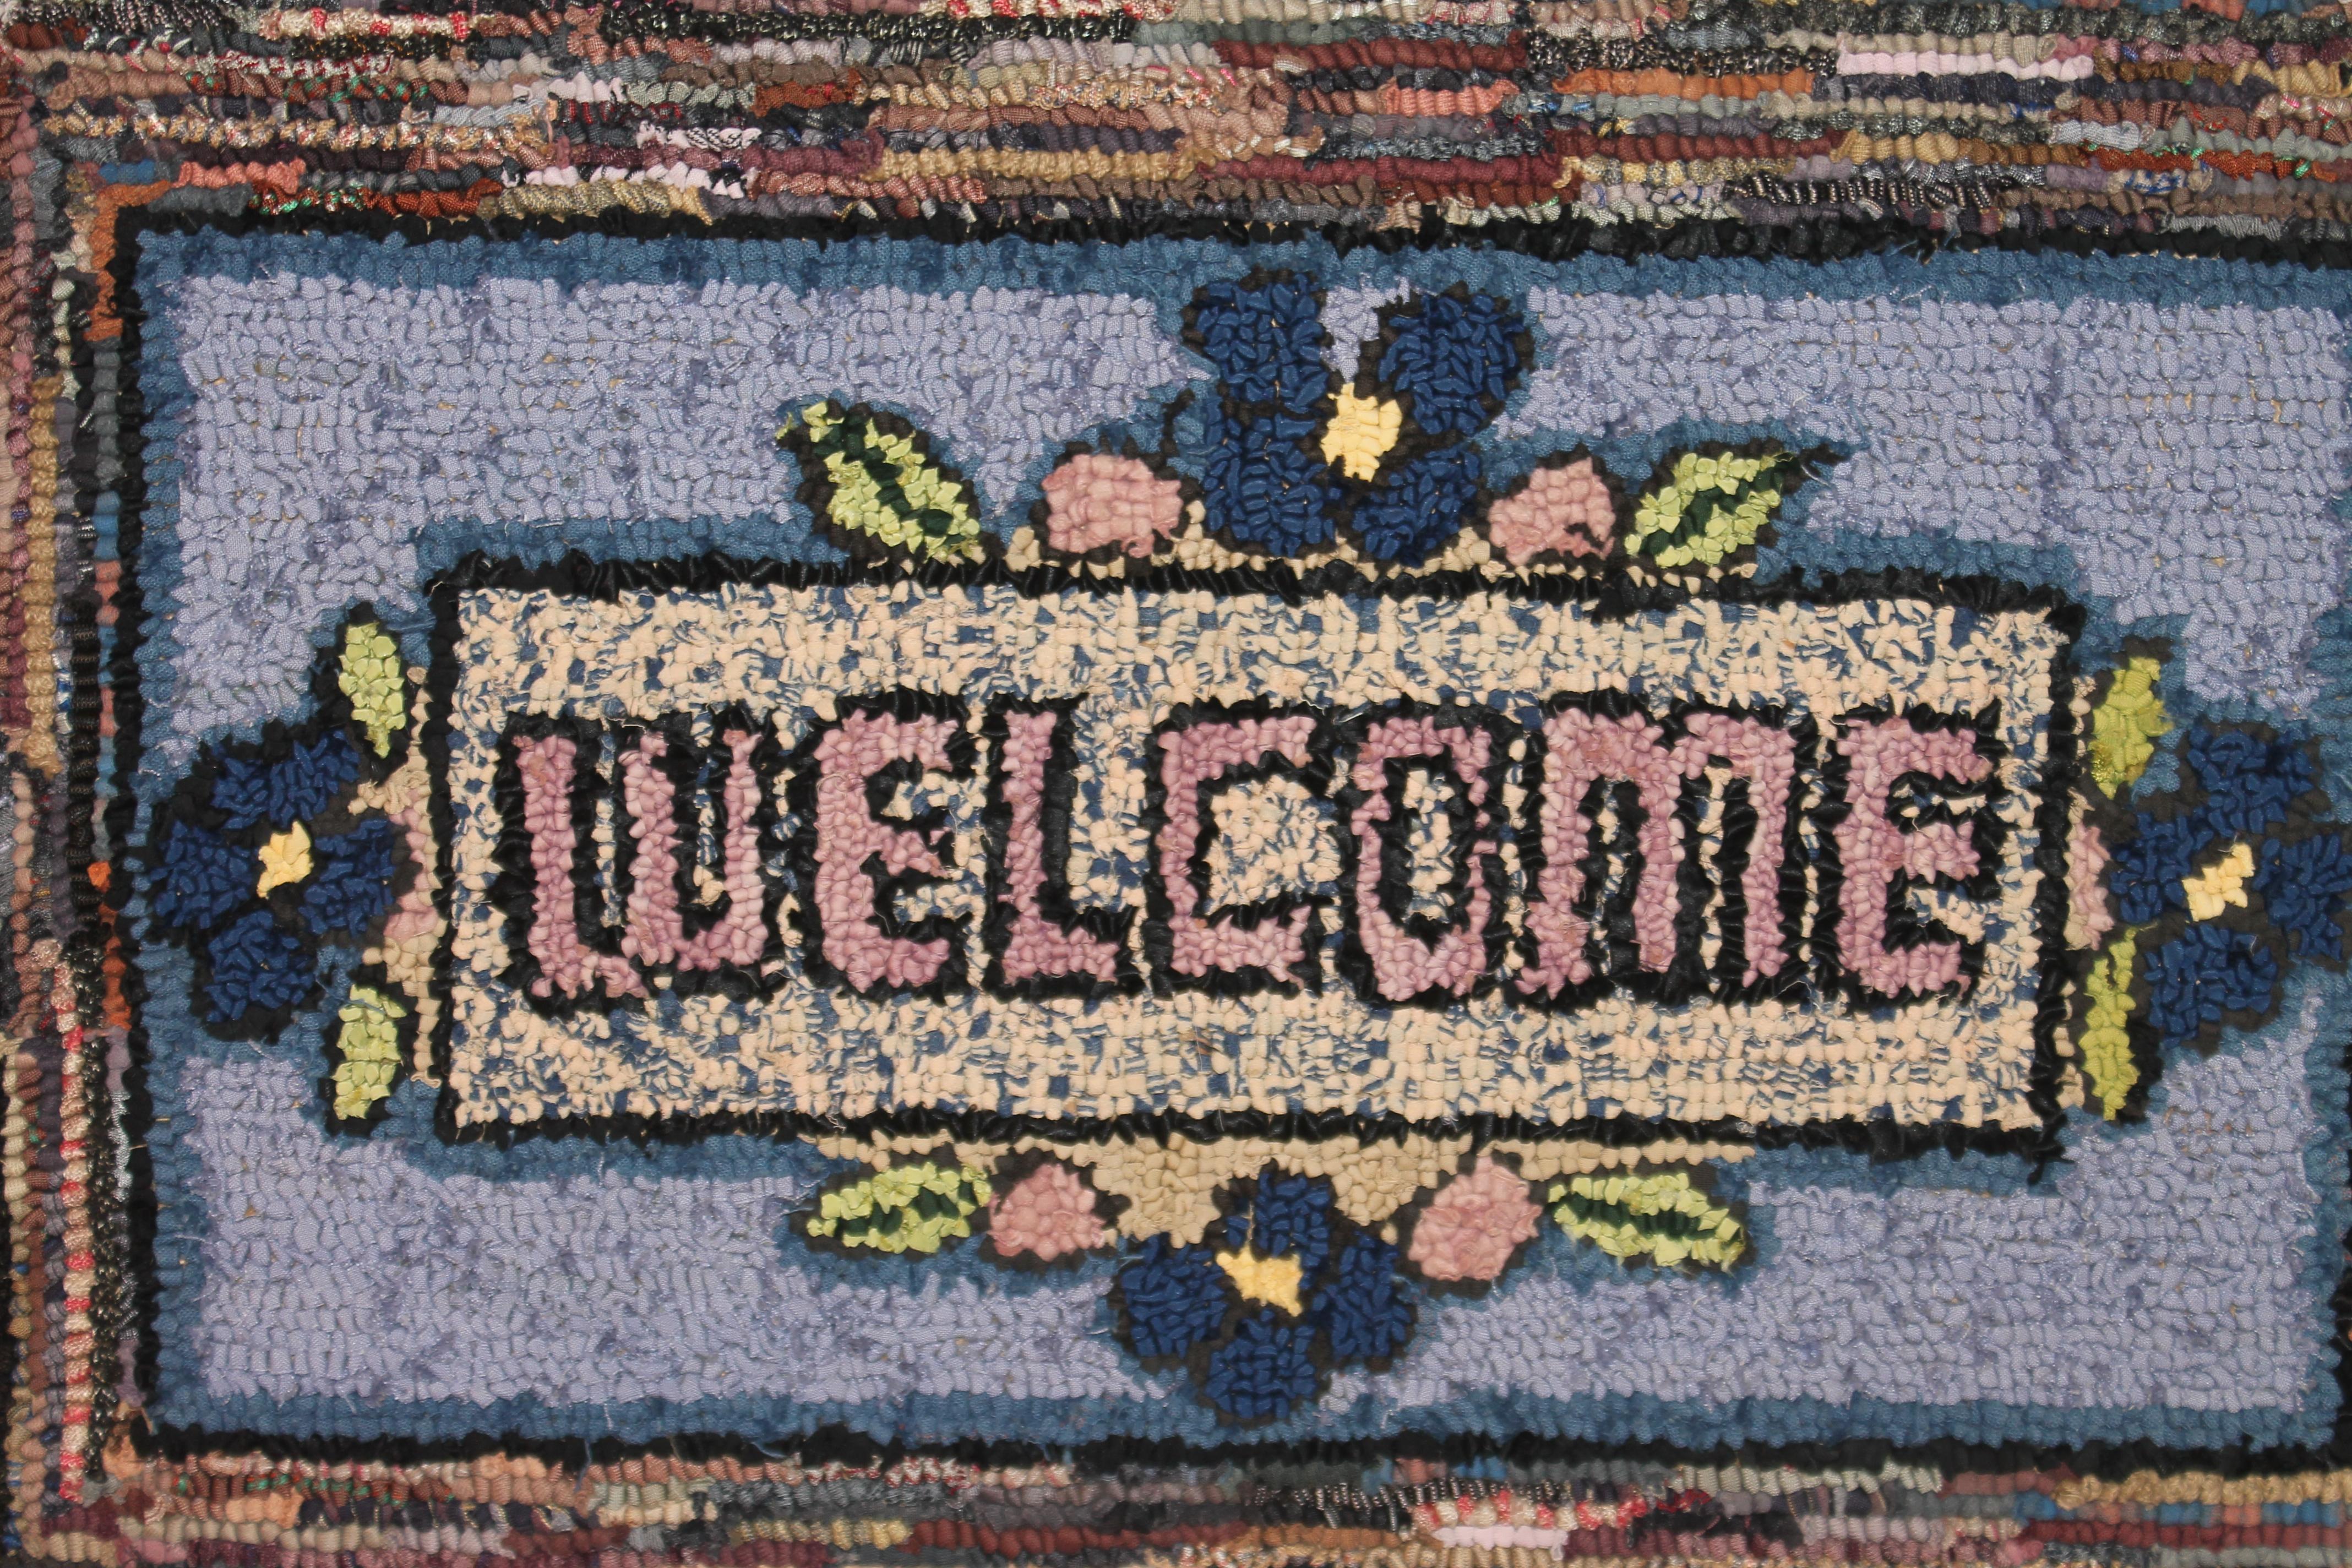 Wunderschöner und einfacher handgehäkelter Teppich aus Pennsylvania. Tolle mehrfarbige Bilder aus Lancaster County, PA. Sehr guter Zustand.